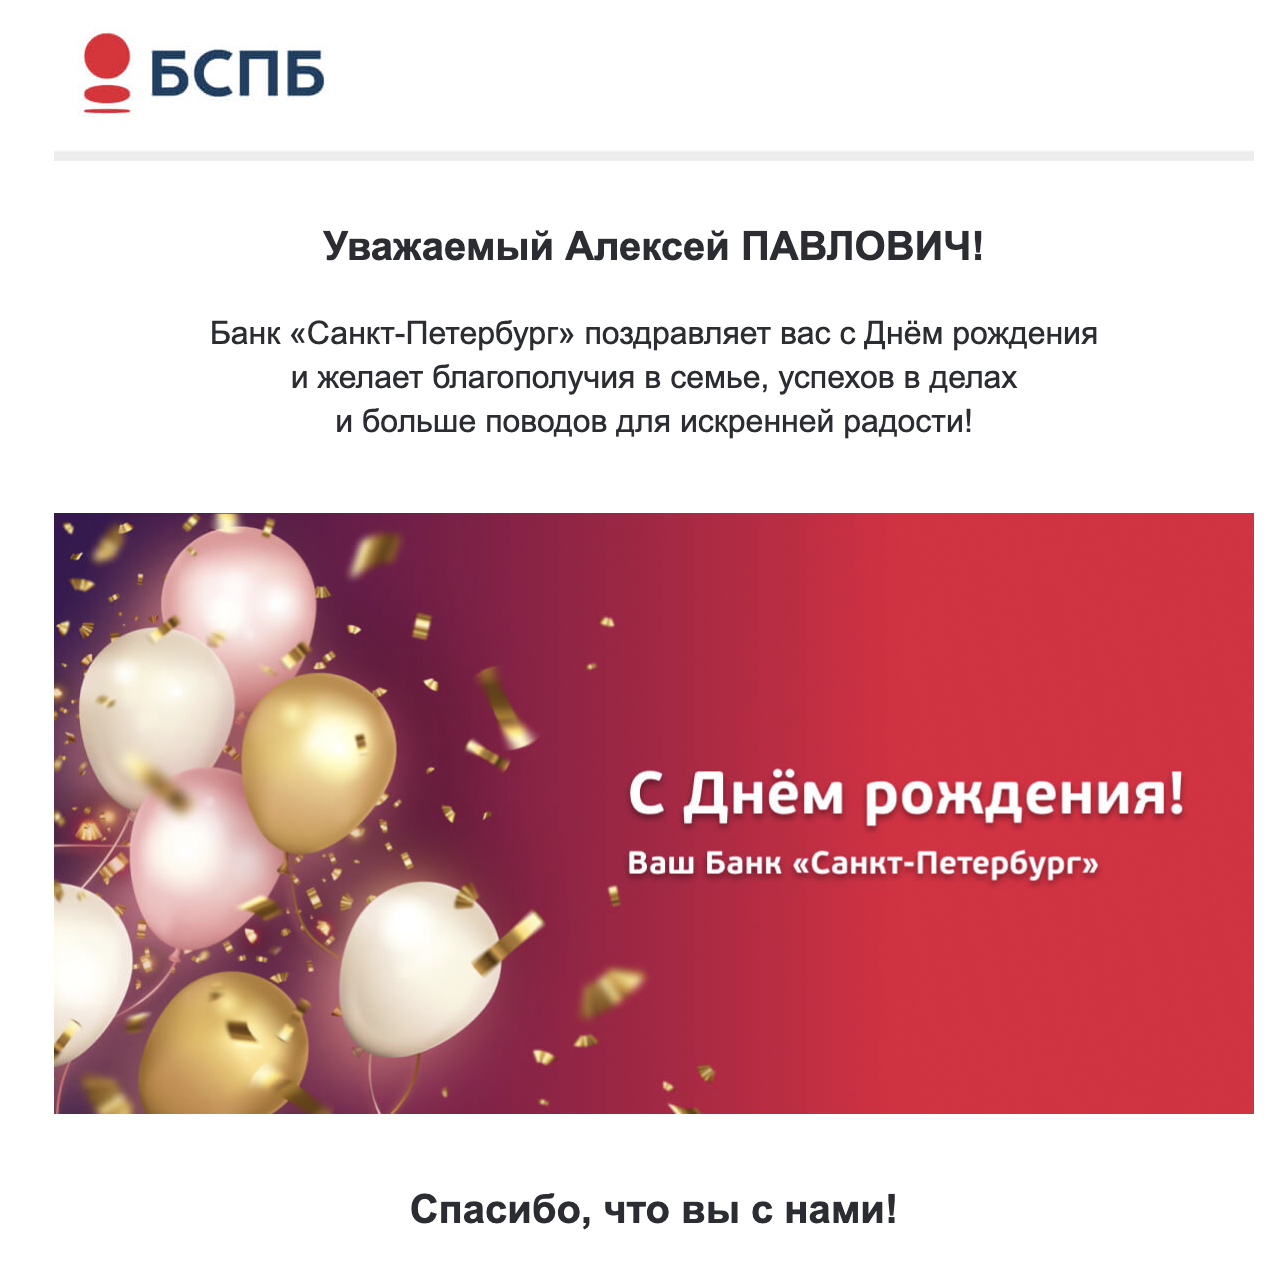 Пример поздравительного письма от банка «Санкт-Петербург».